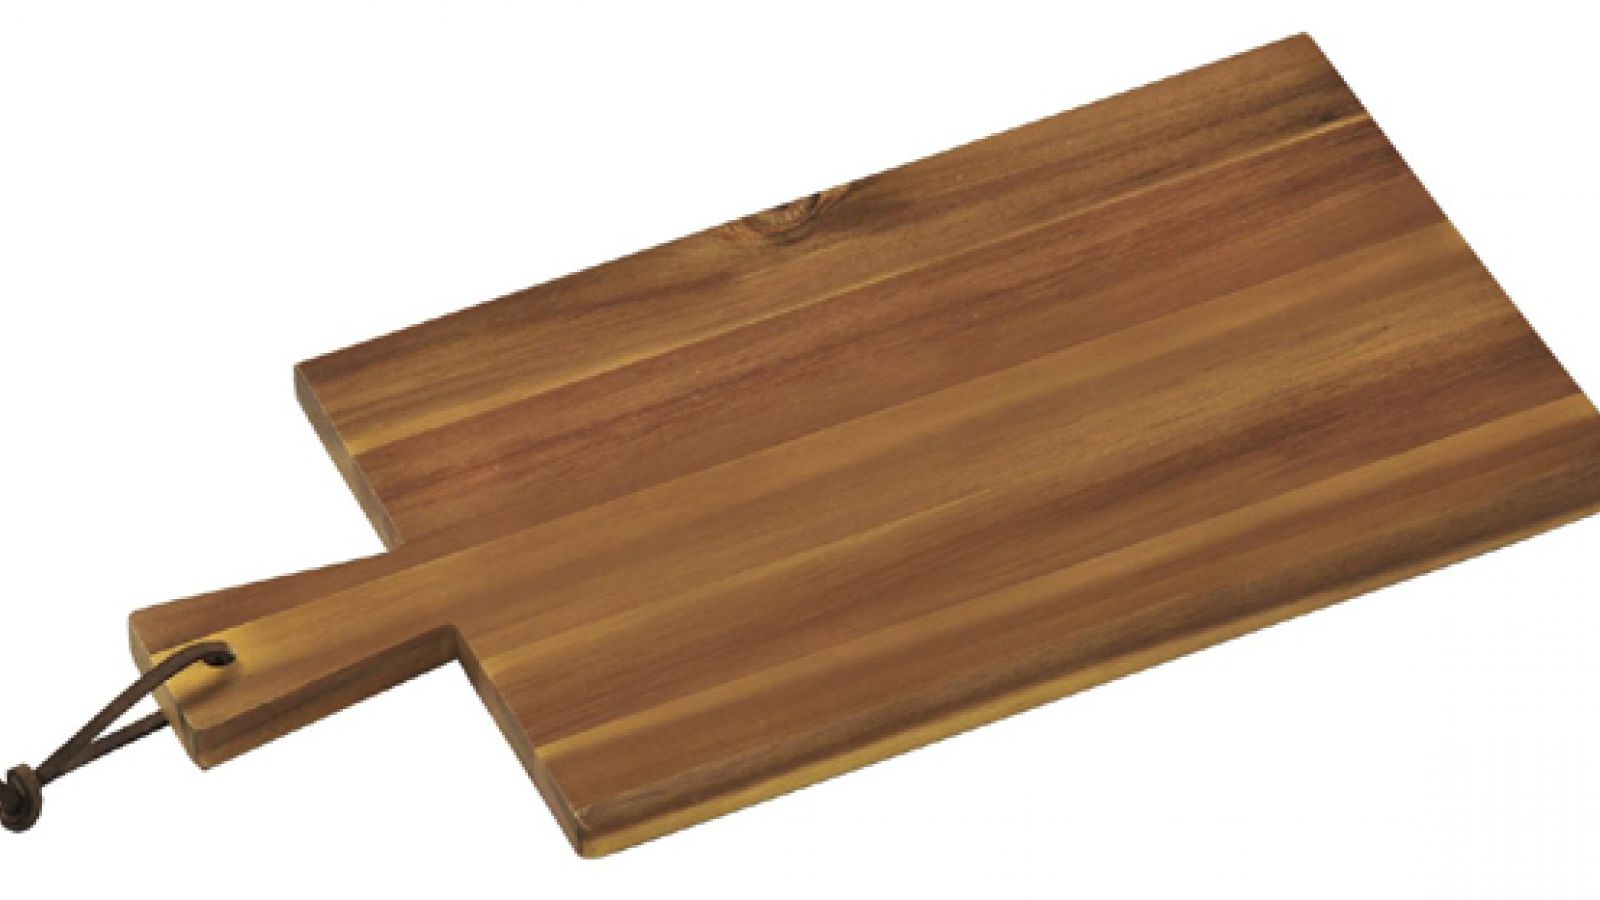 Tagliere in legno di Acacia con manico in acciaio inox – cm 30x23x2 -  Coltelleria Gianola - Think Big, Buy Small!